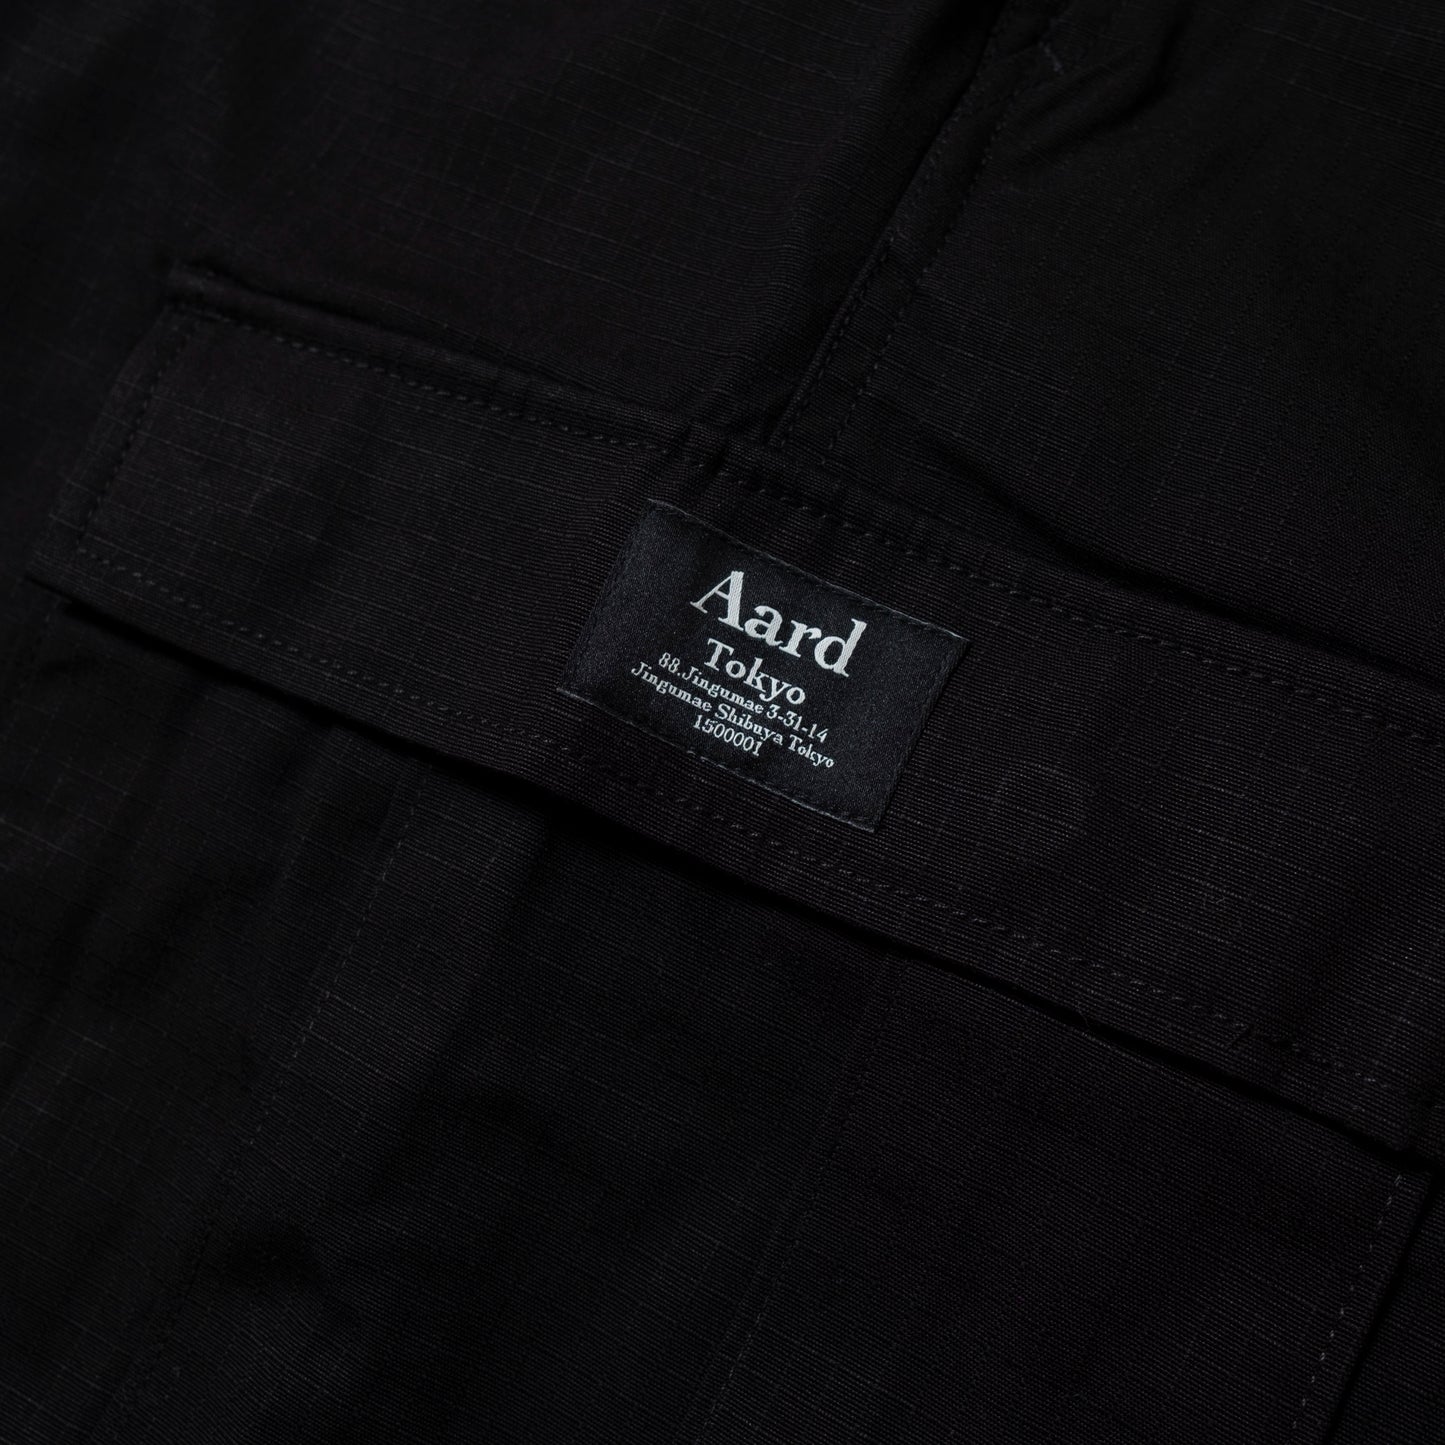 Aard Tokyo Label Field Short Black